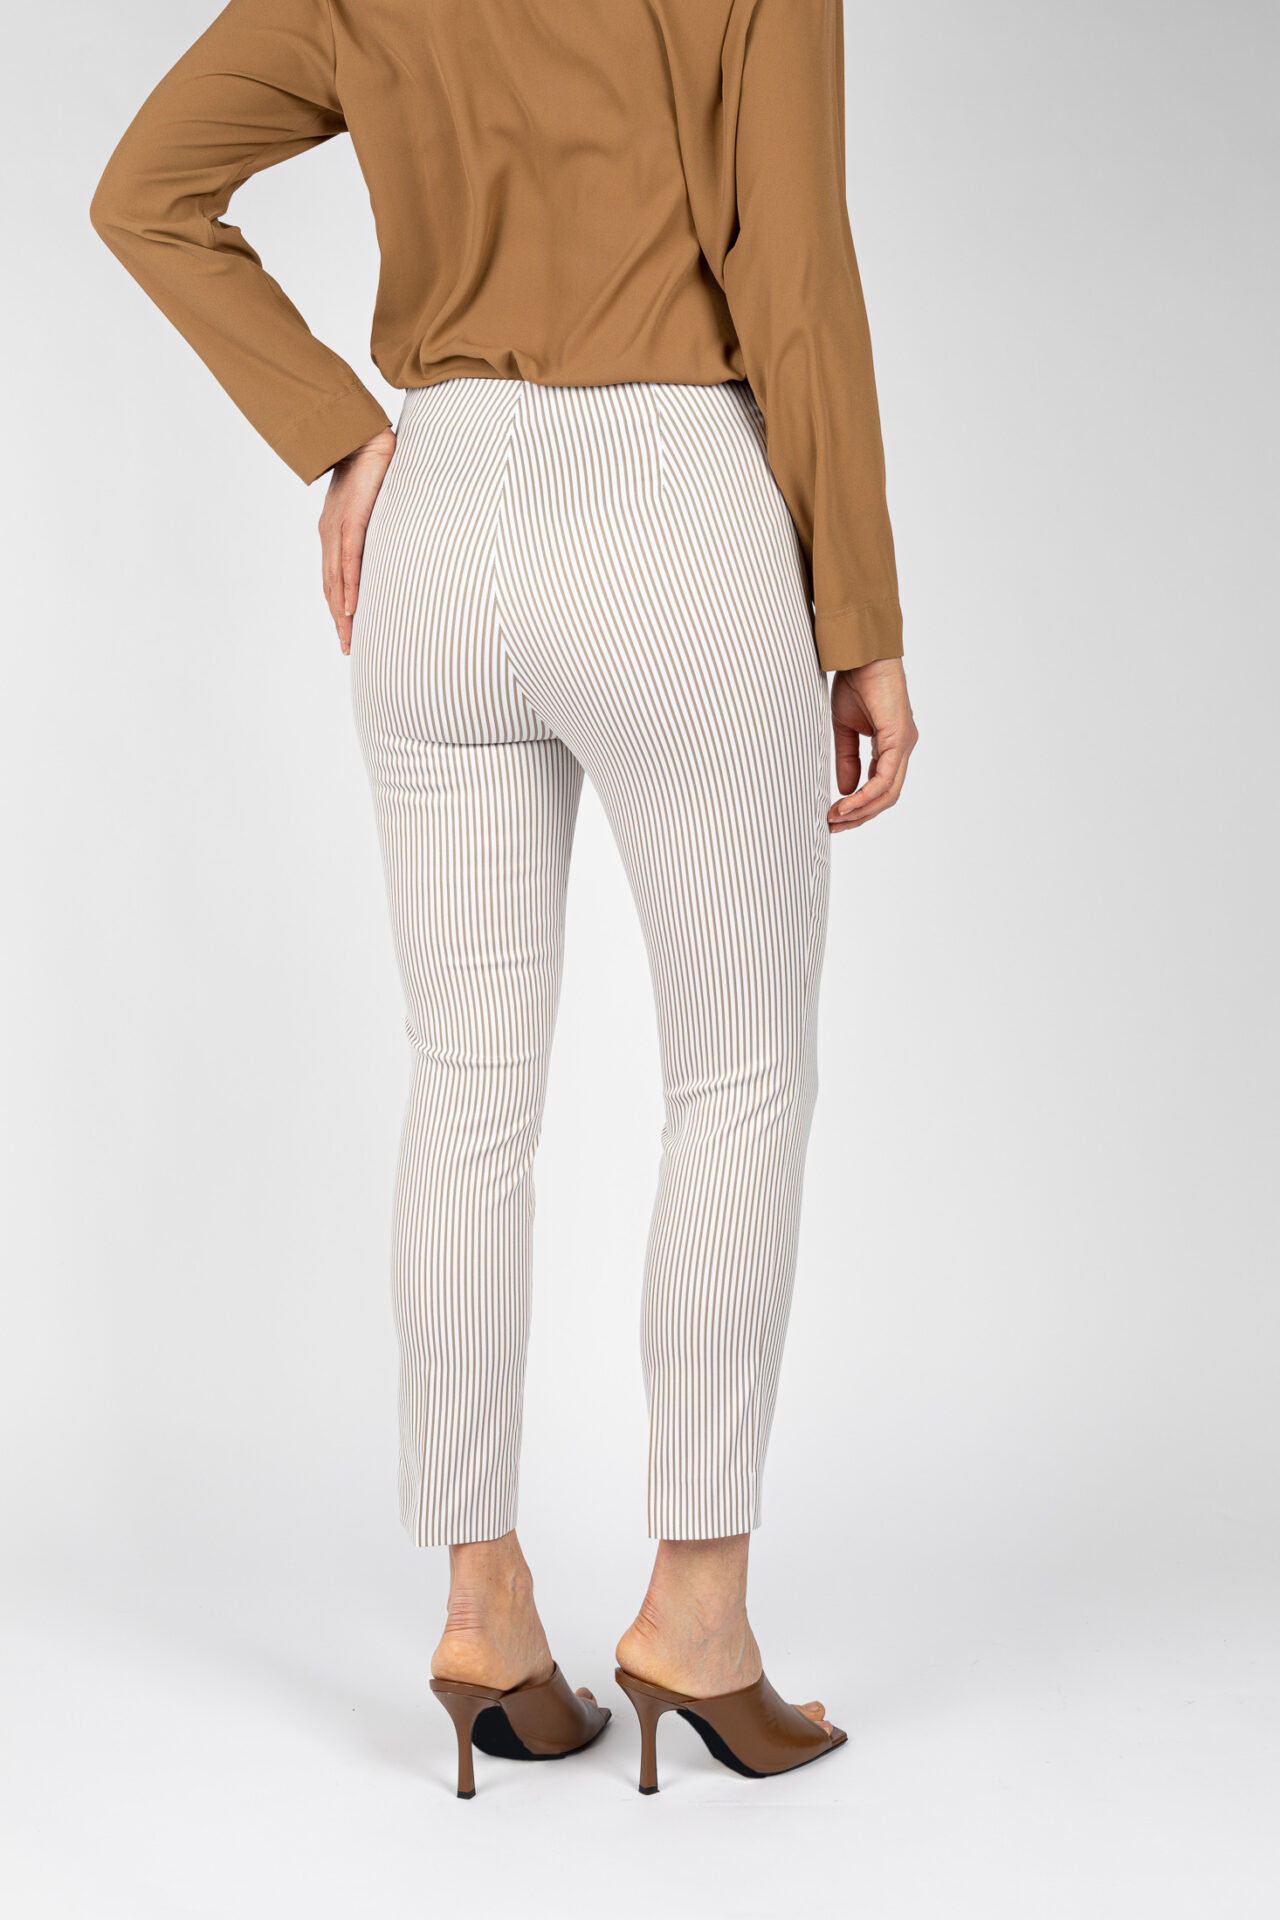 Pantaloni a riga colore beige da donna linea stretta - P19614E BEIGE - 5